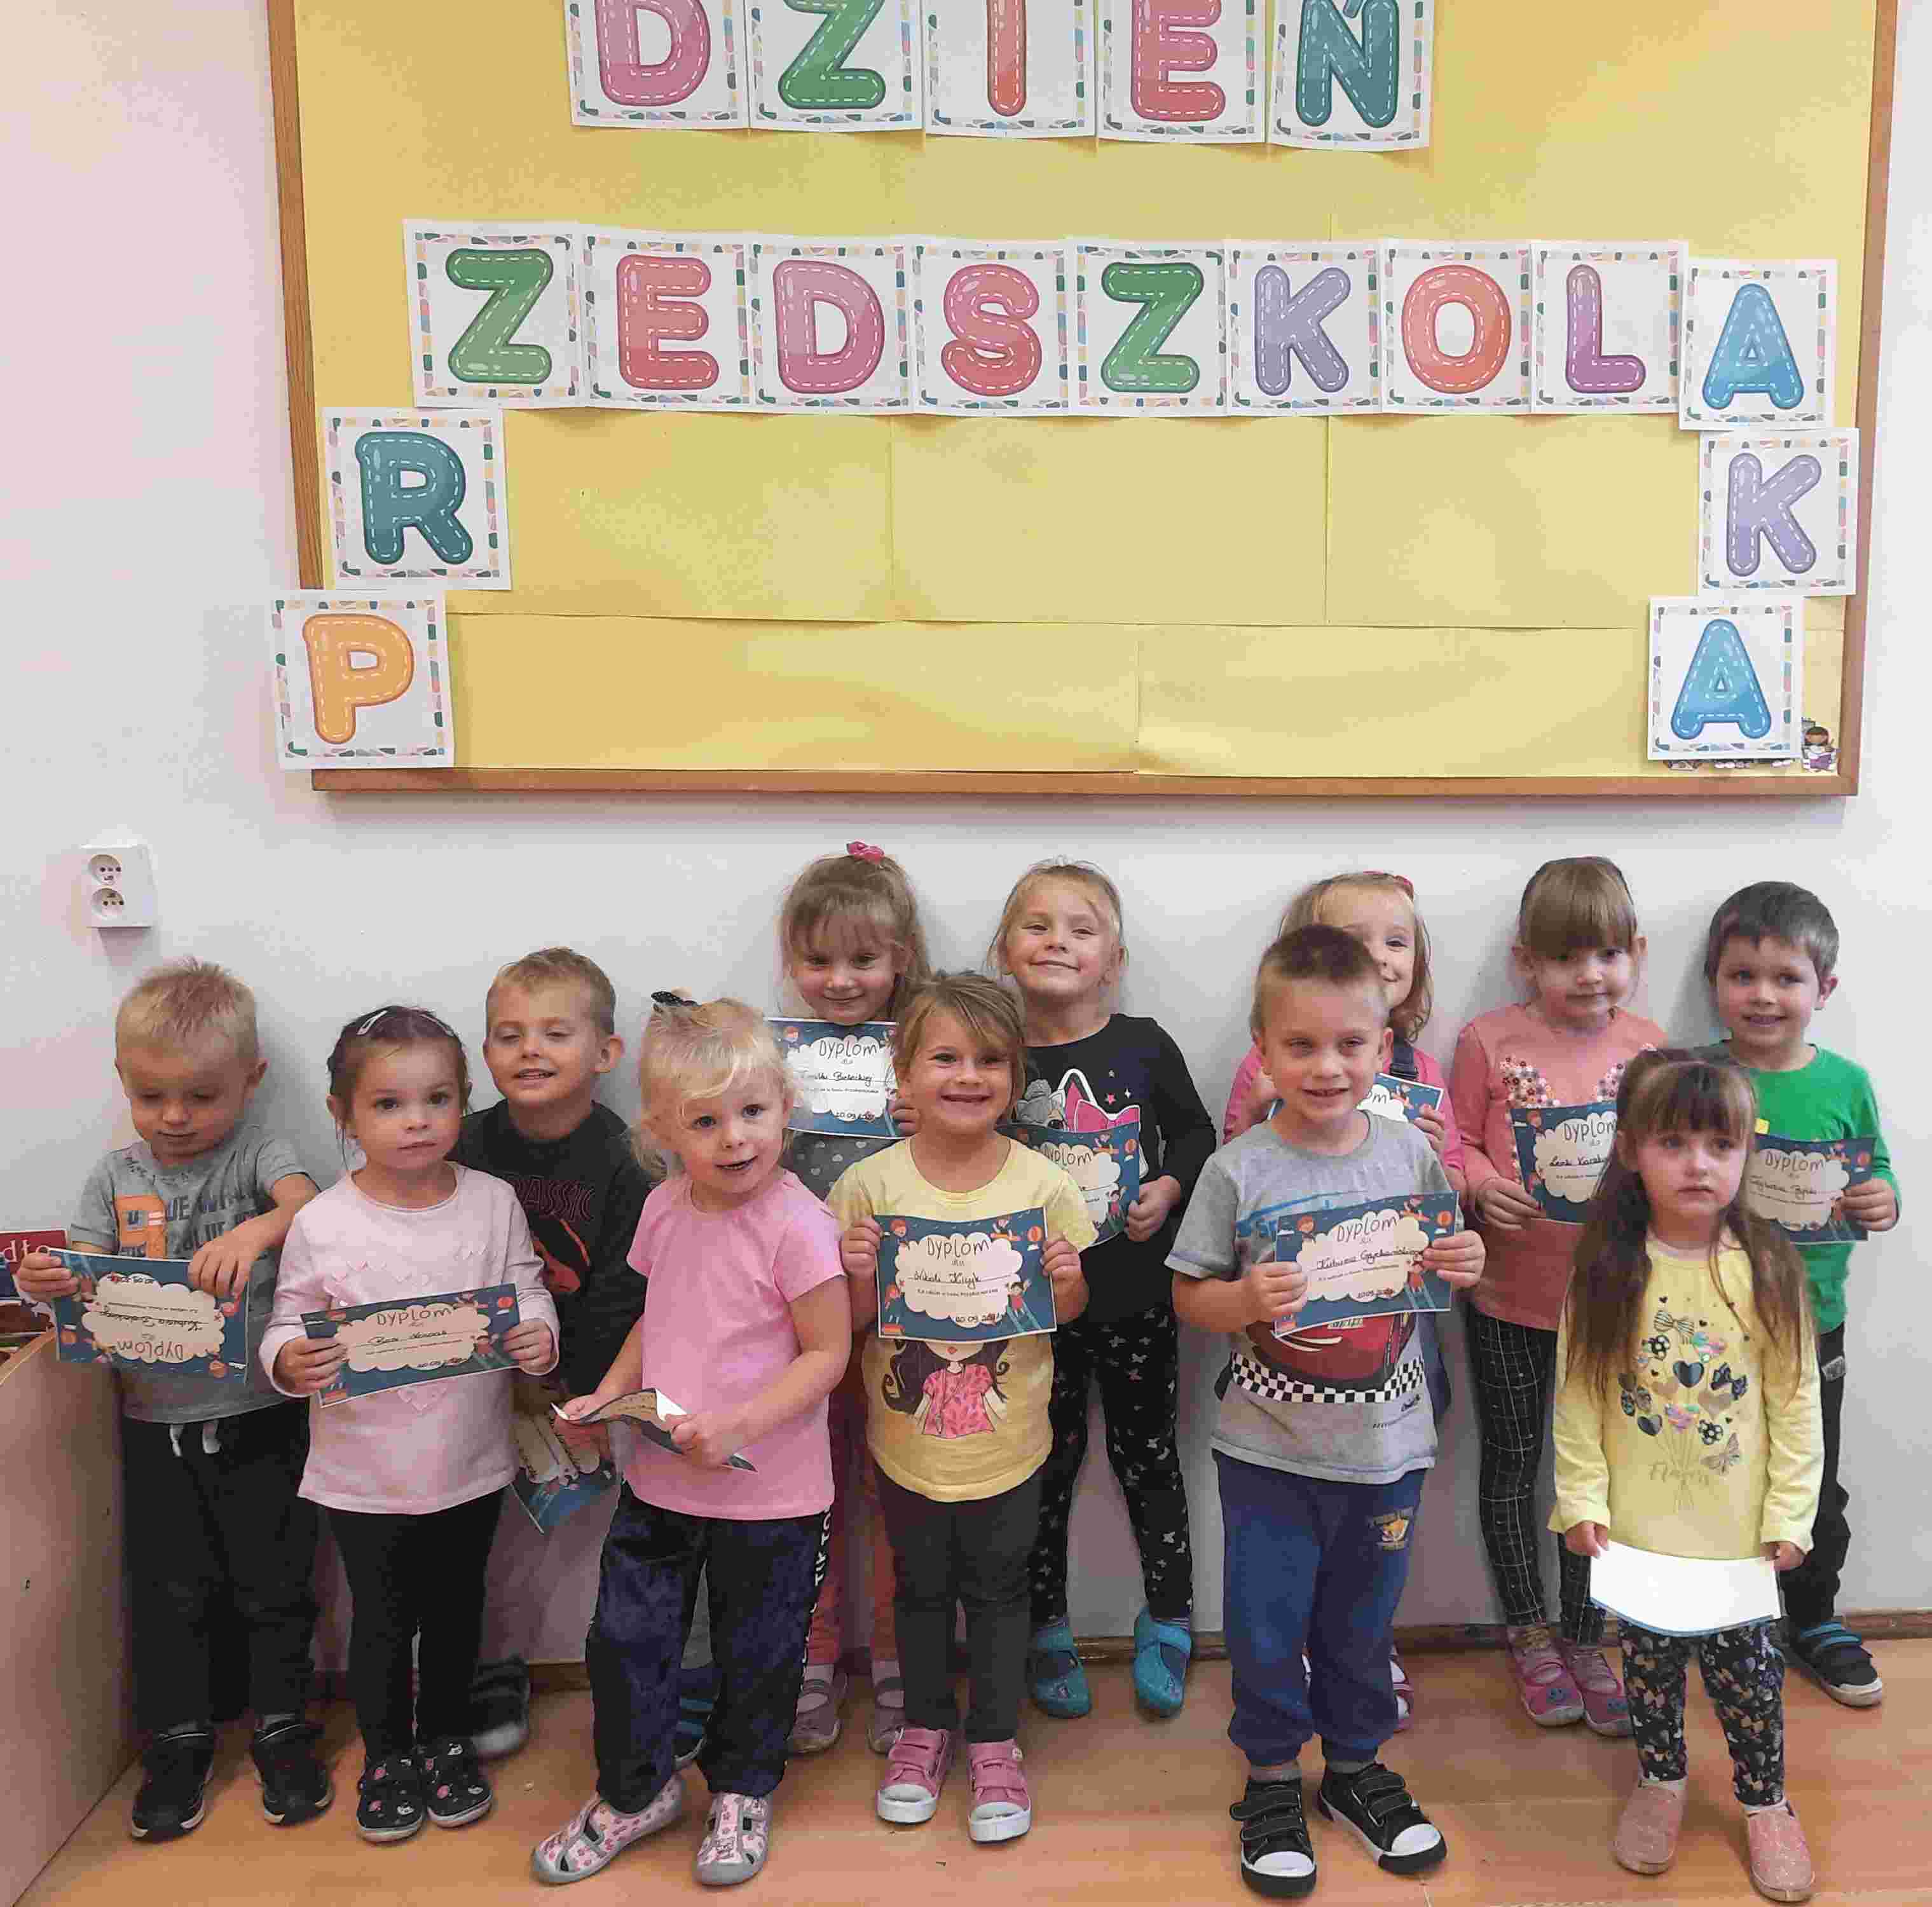 Grupa przedszkolaków z pamiątkowymi dyplomami pod tablicą z napisem: "Dzień Przedszkolaka"